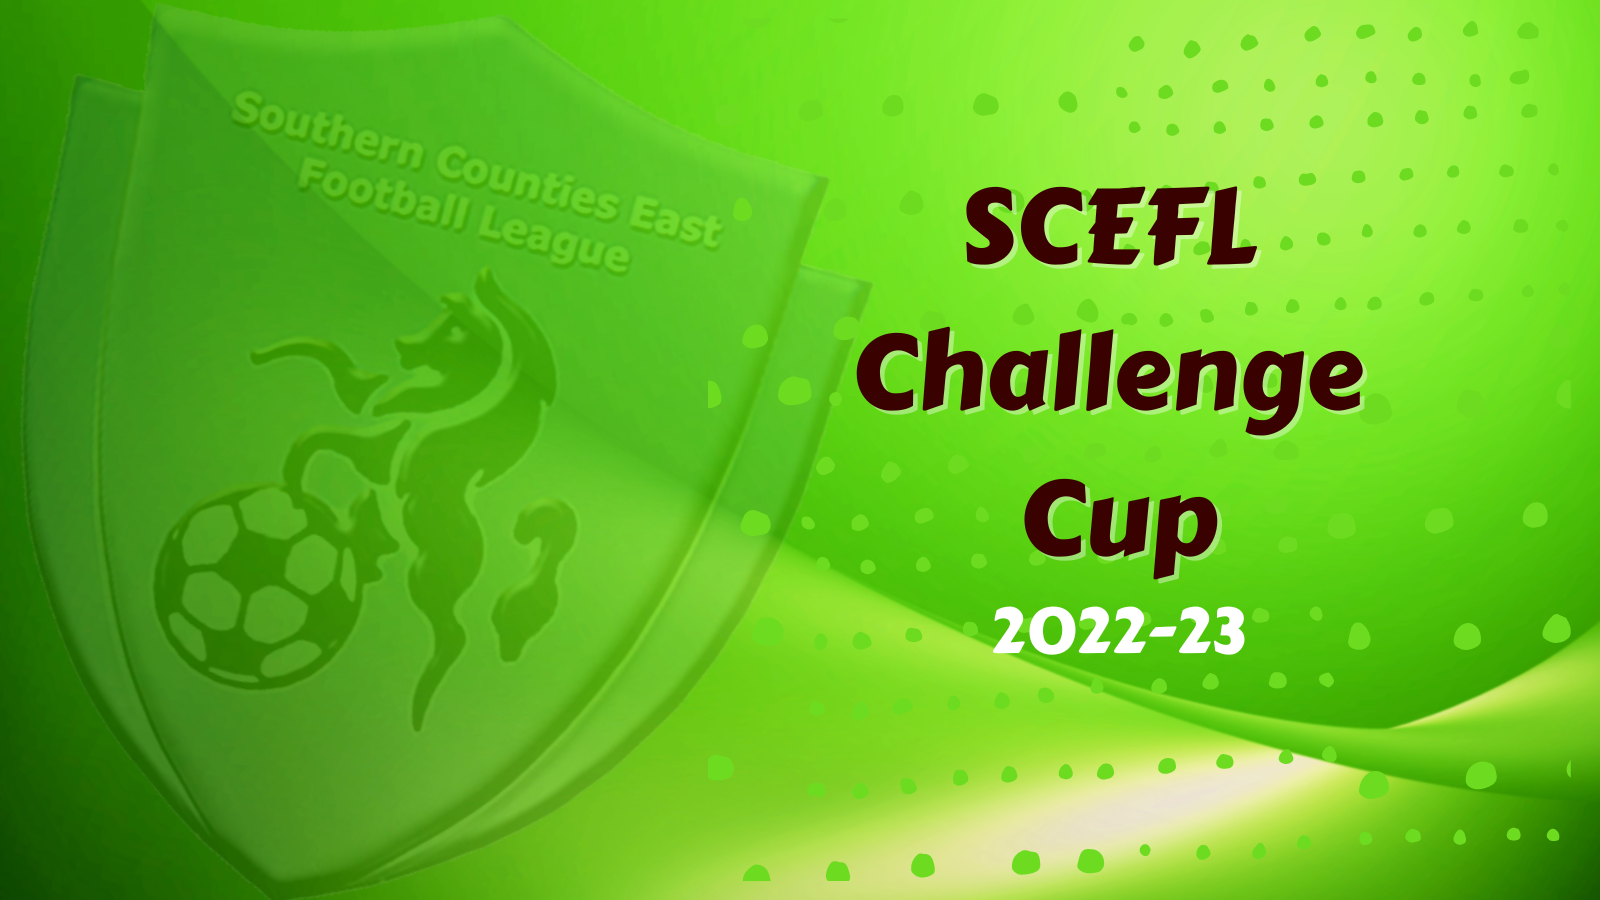 SCEFL CHALLENGE CUP - 2022/23